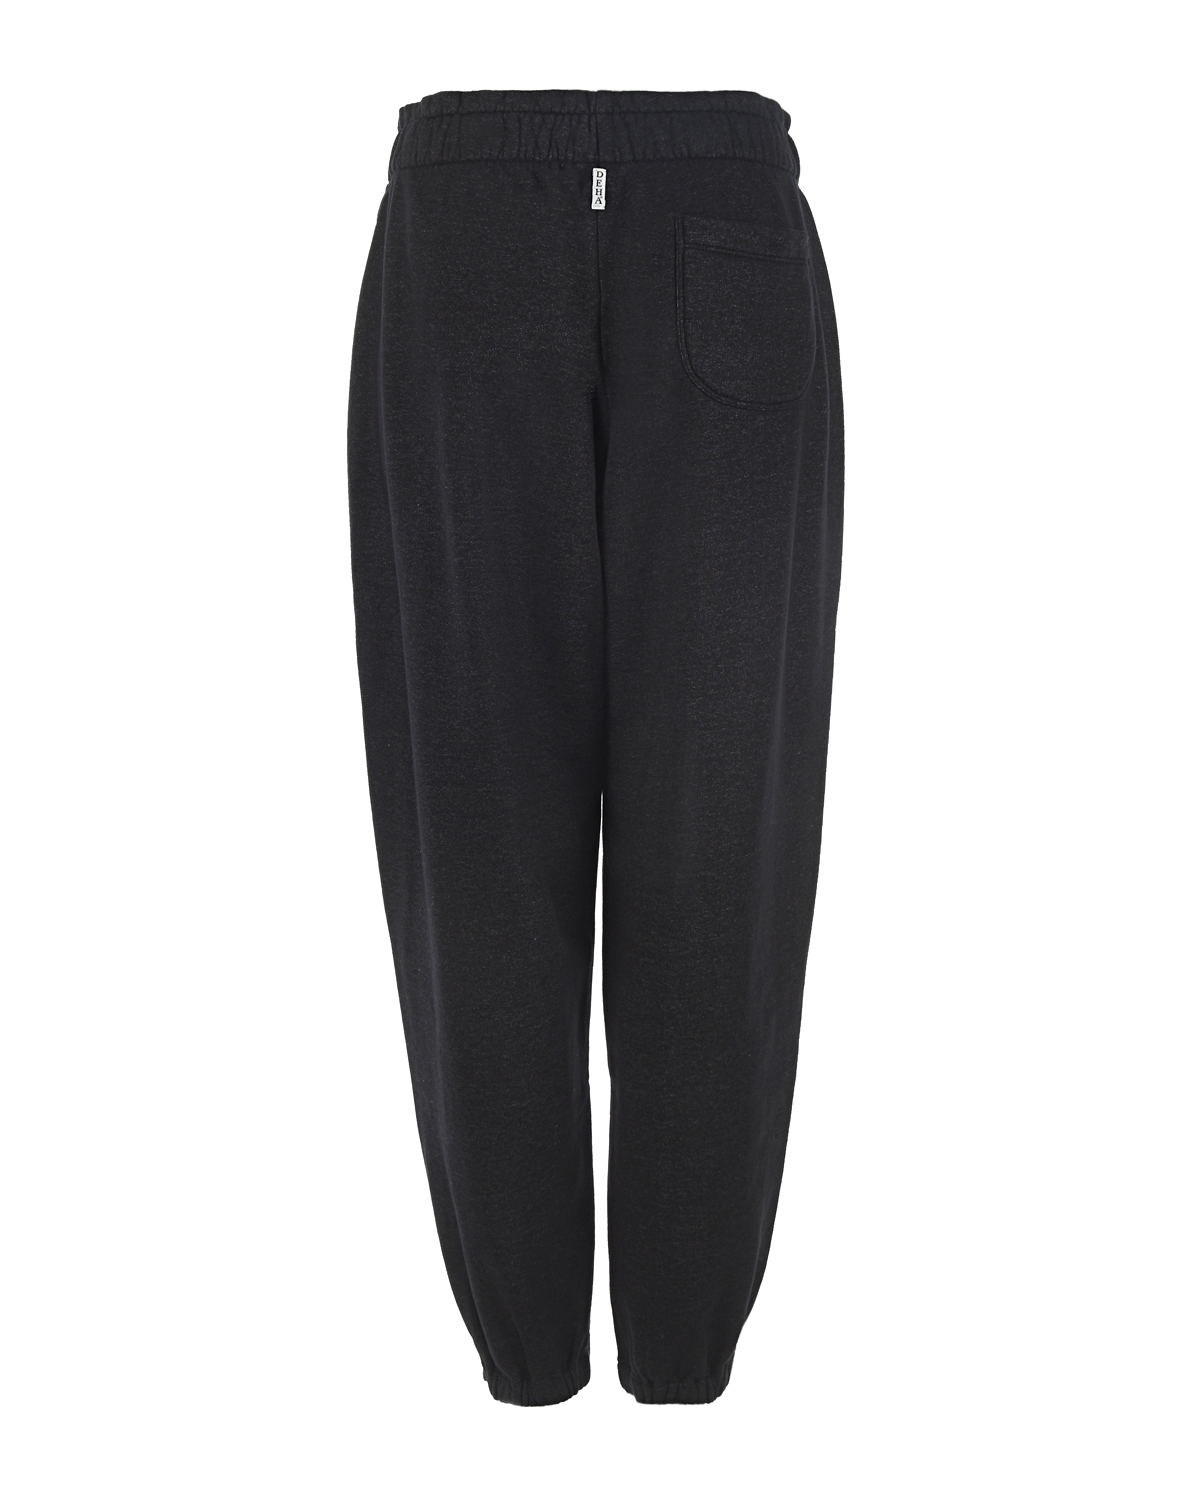 Черные спортивные брюки Deha, размер 44, цвет черный - фото 2